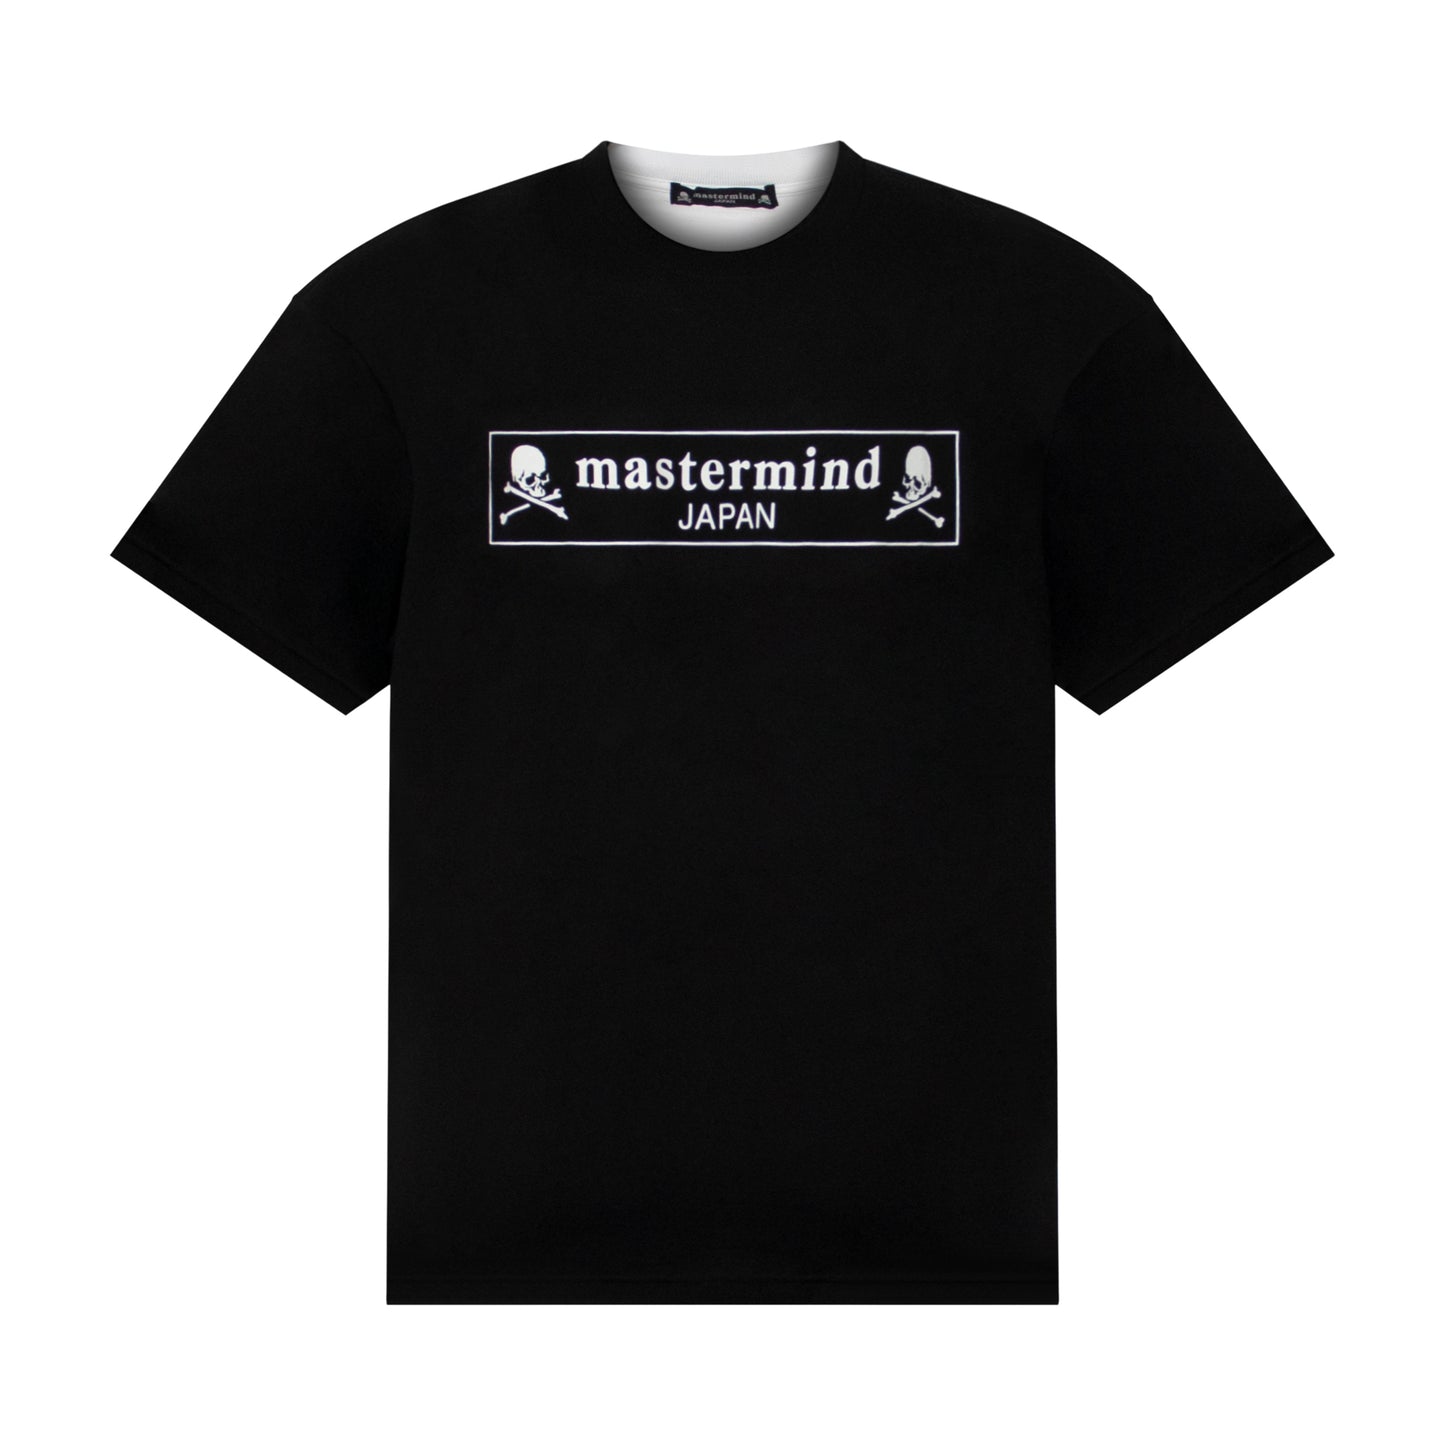 Mastermind Japan Logo T-Shirts in Black/White